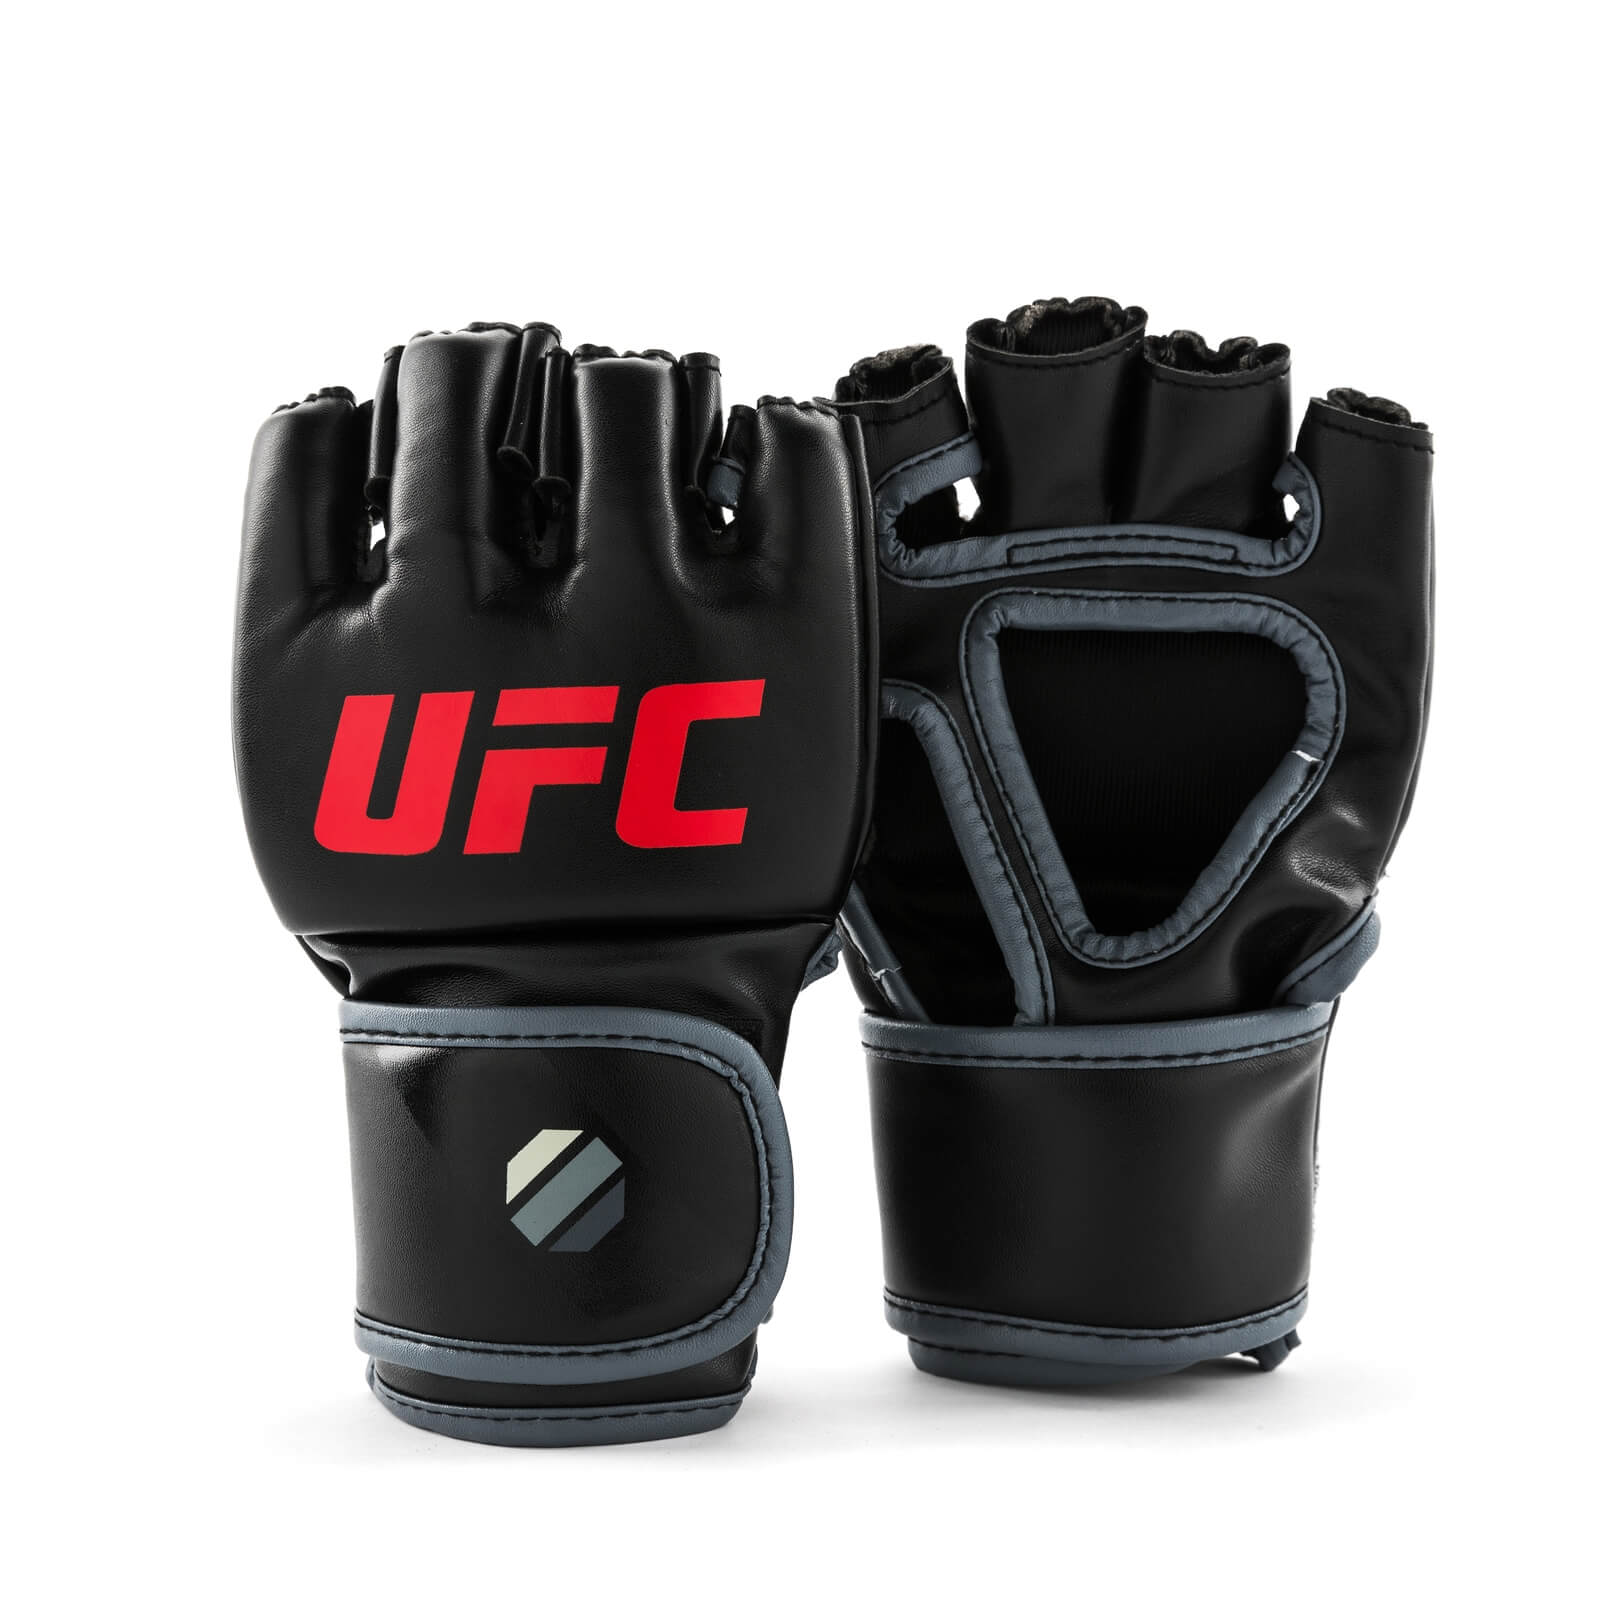 MMA Gloves, black, UFC